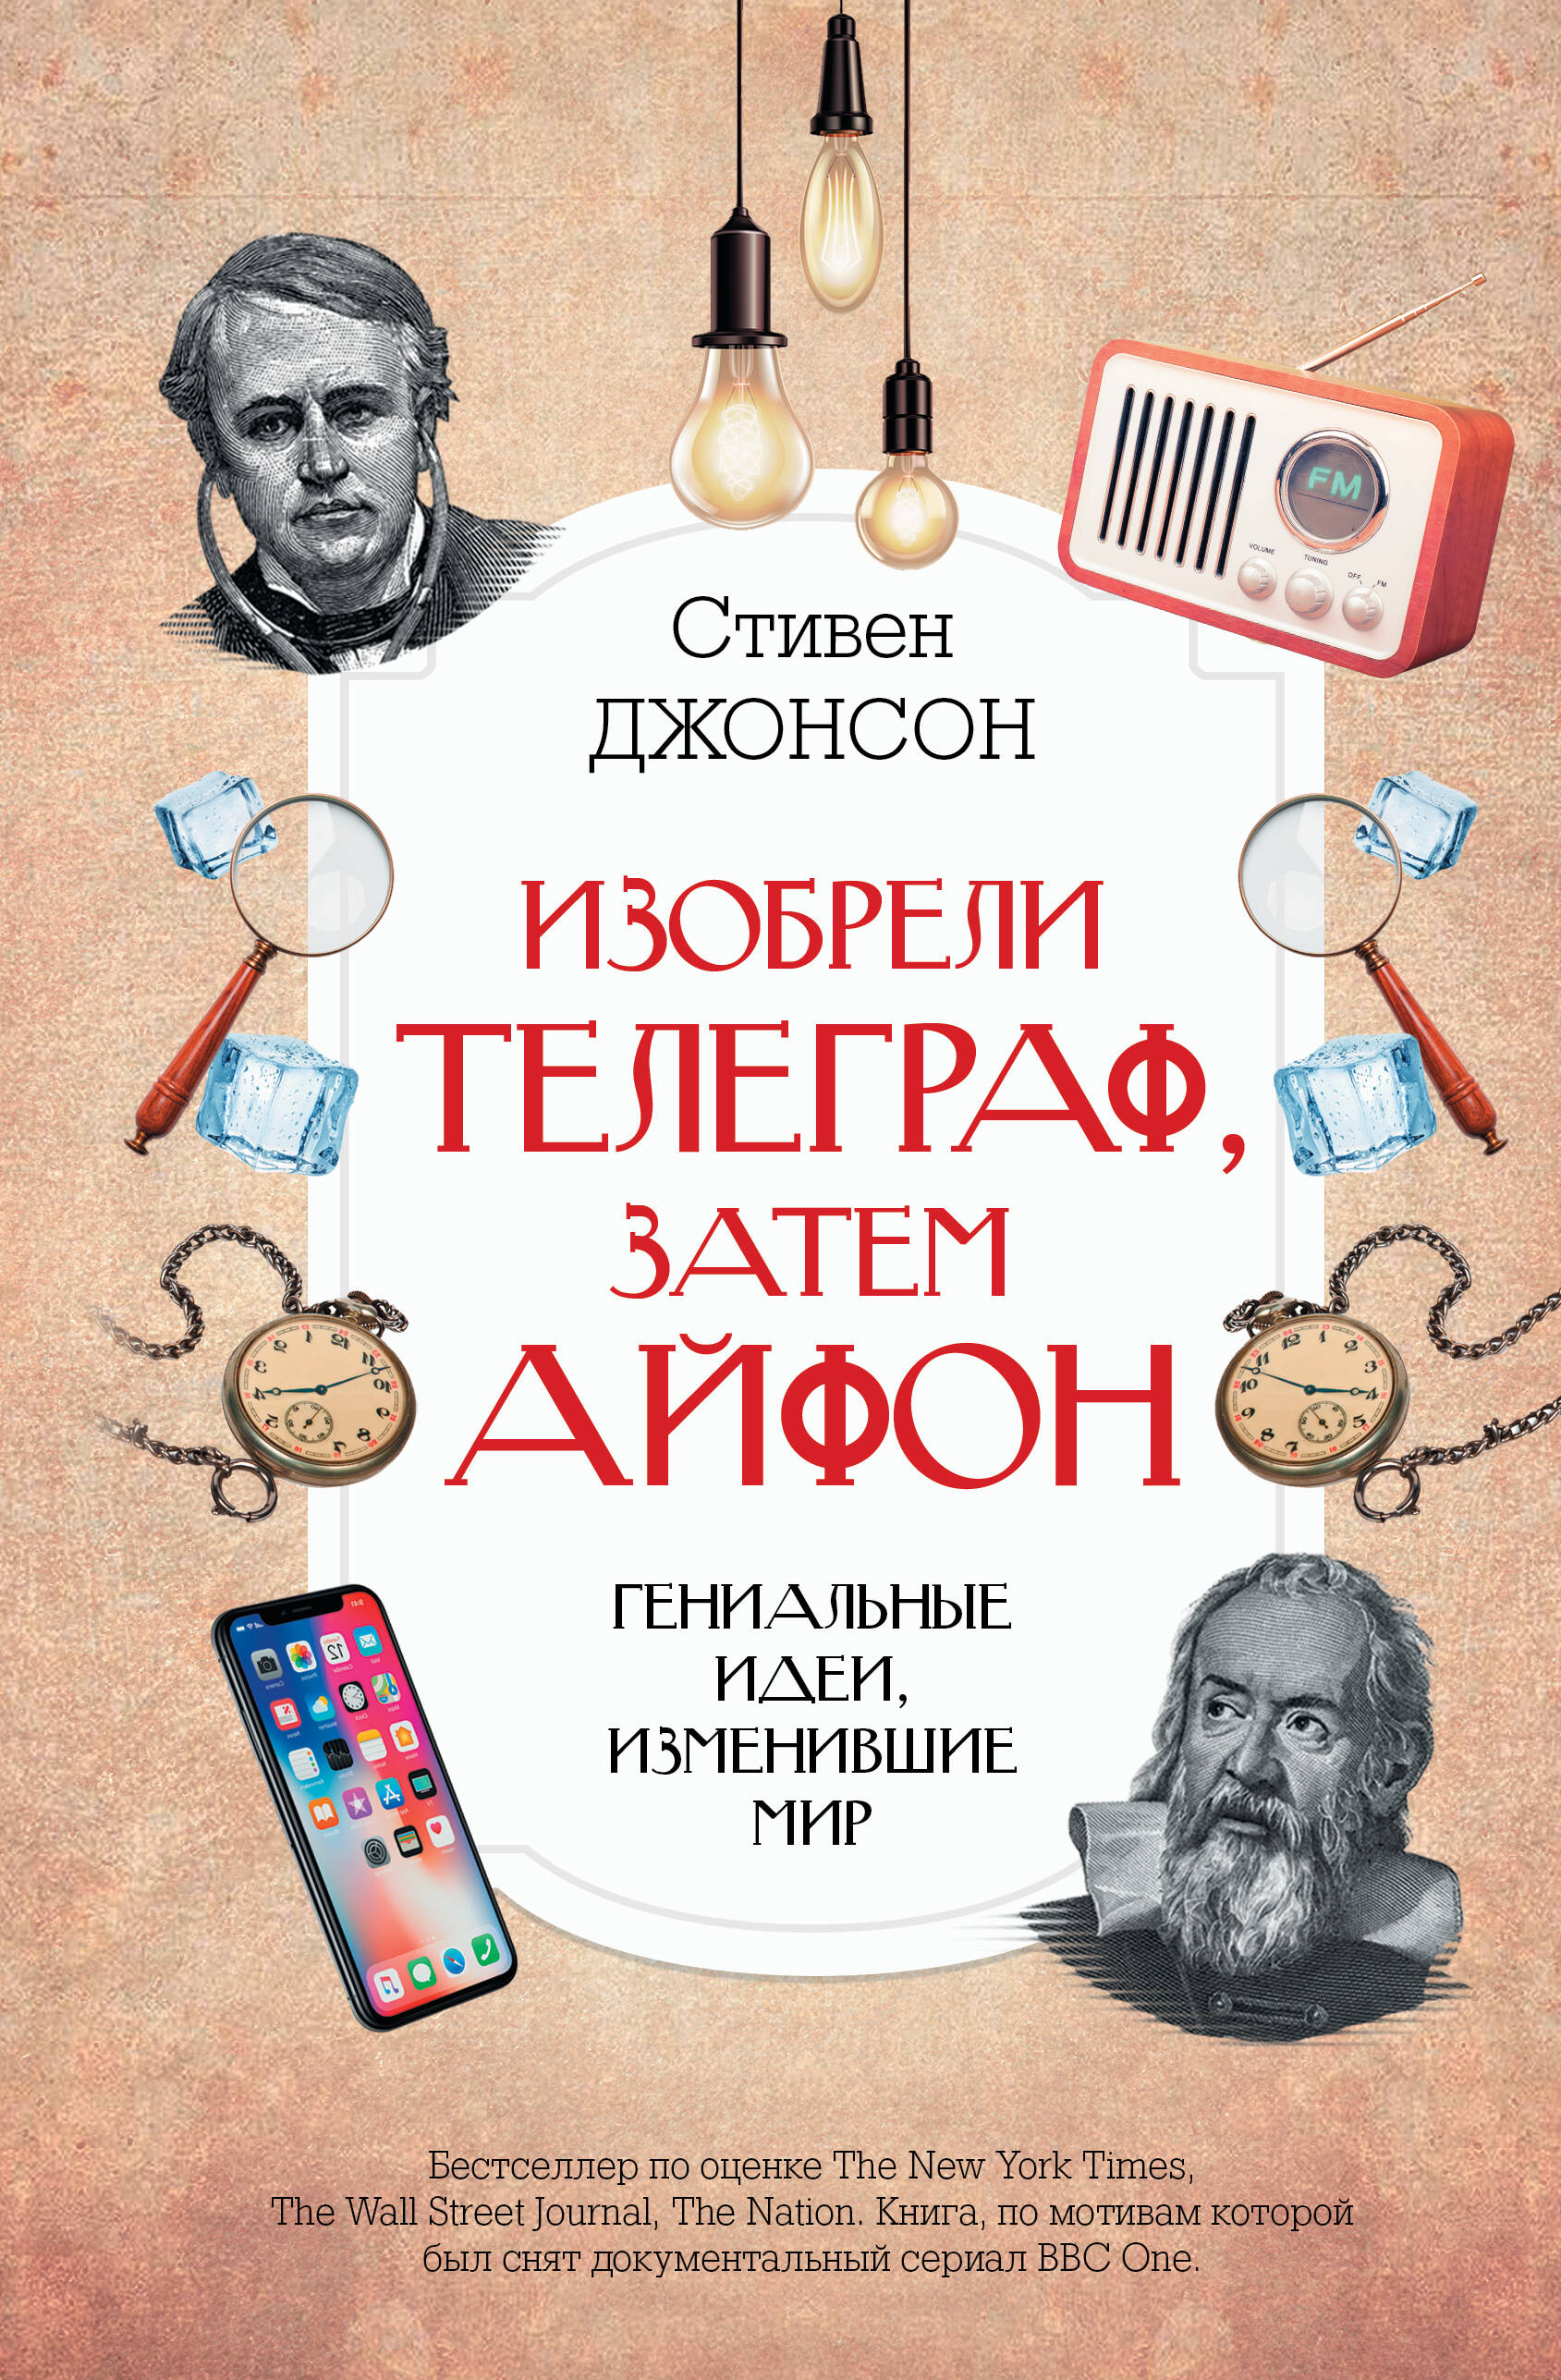 Джонсон Стивен Изобрели телеграф, затем айфон: гениальные идеи, изменившие мир фрунзенская коммуна книга о необычной жизни обыкновенных советских ребят